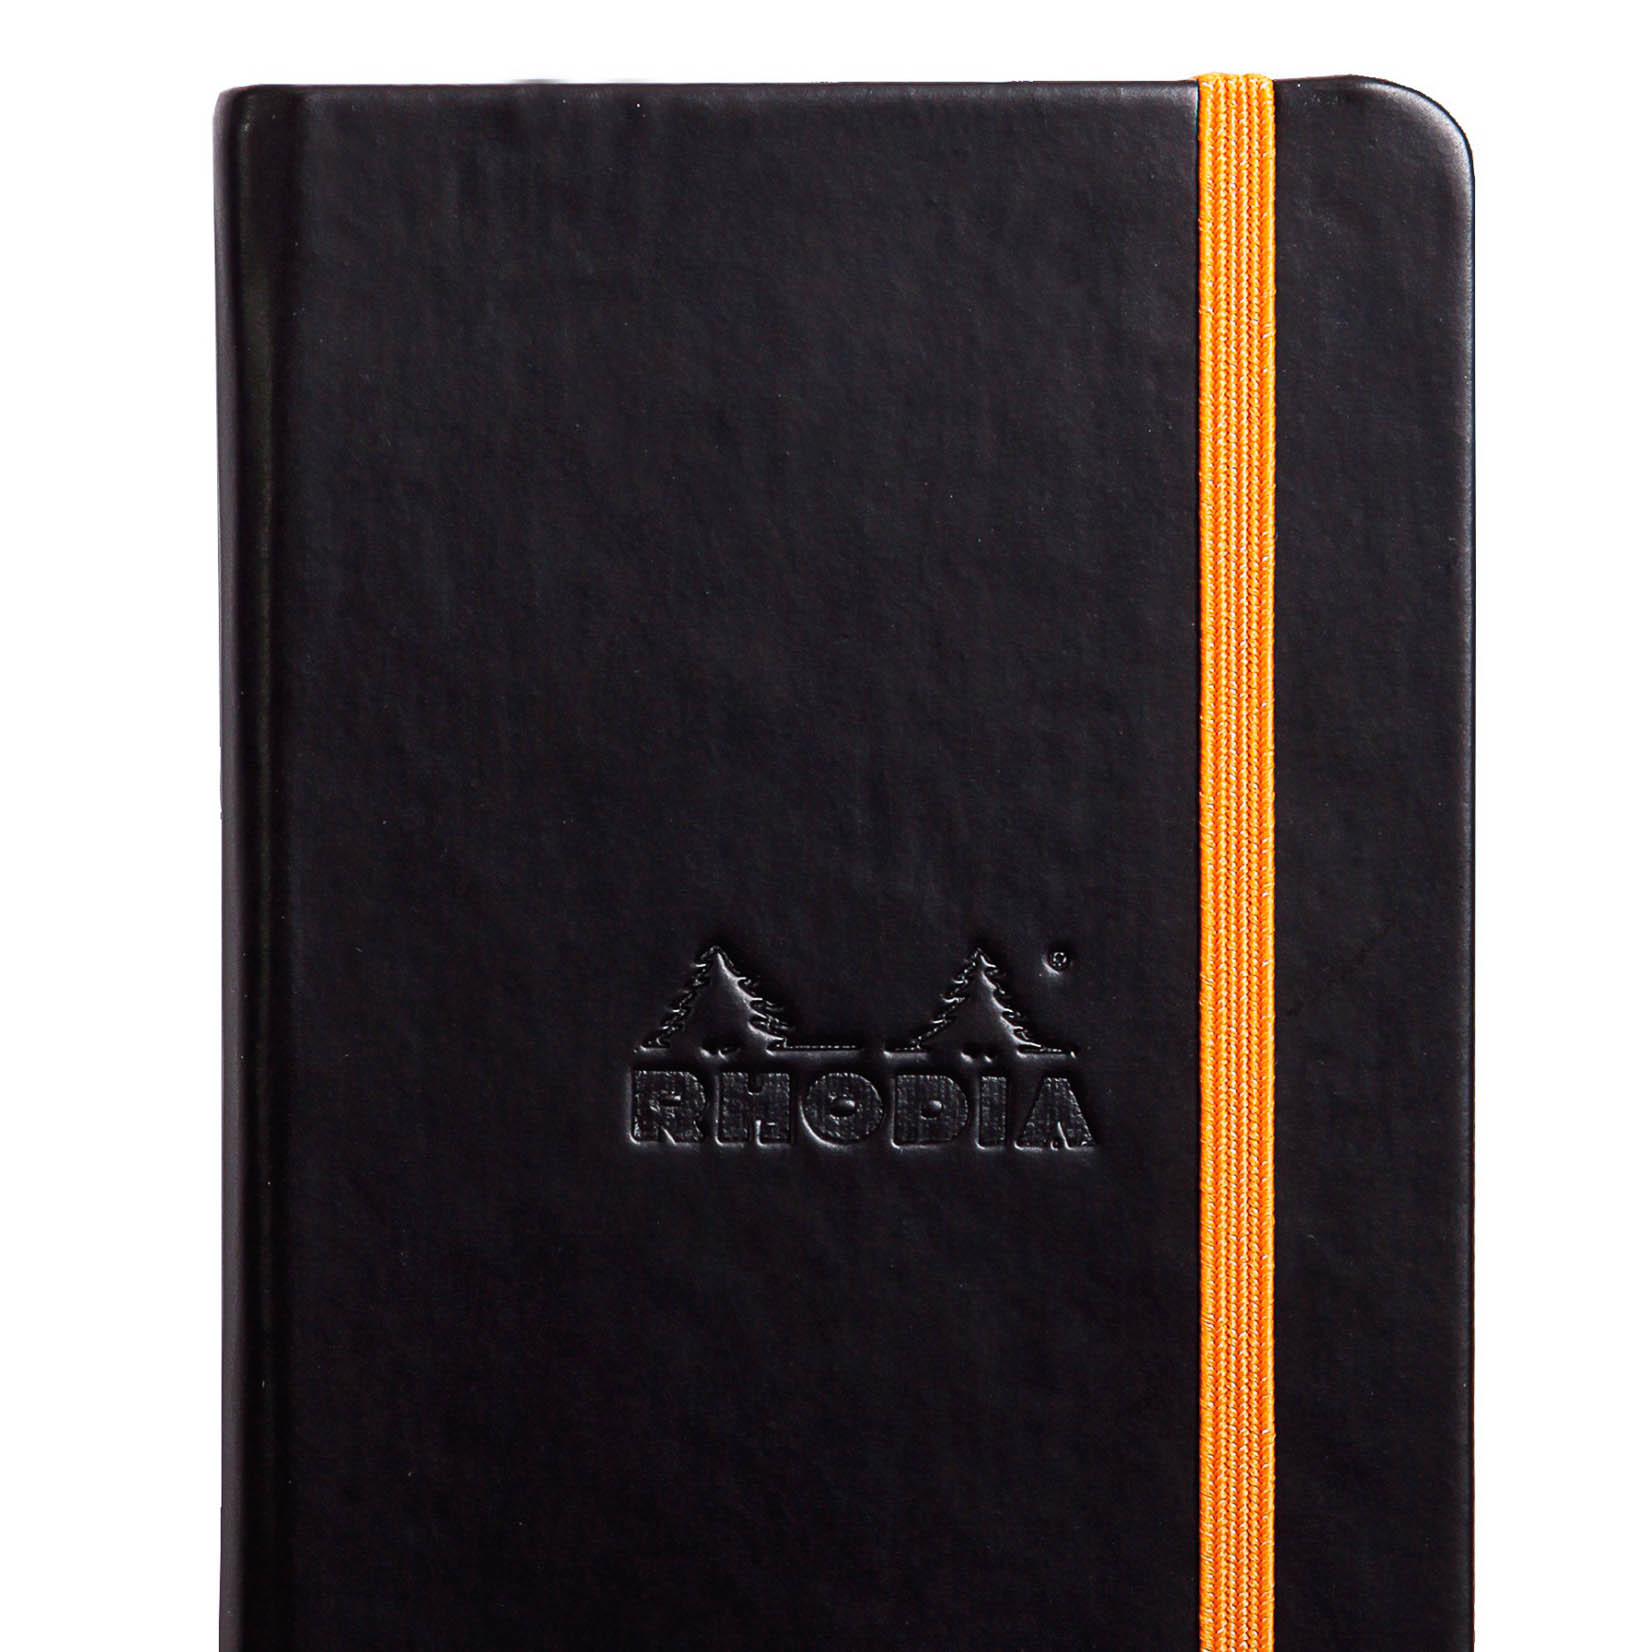 Rhodia Notizbuch Hardcover liniert A6 schwarz